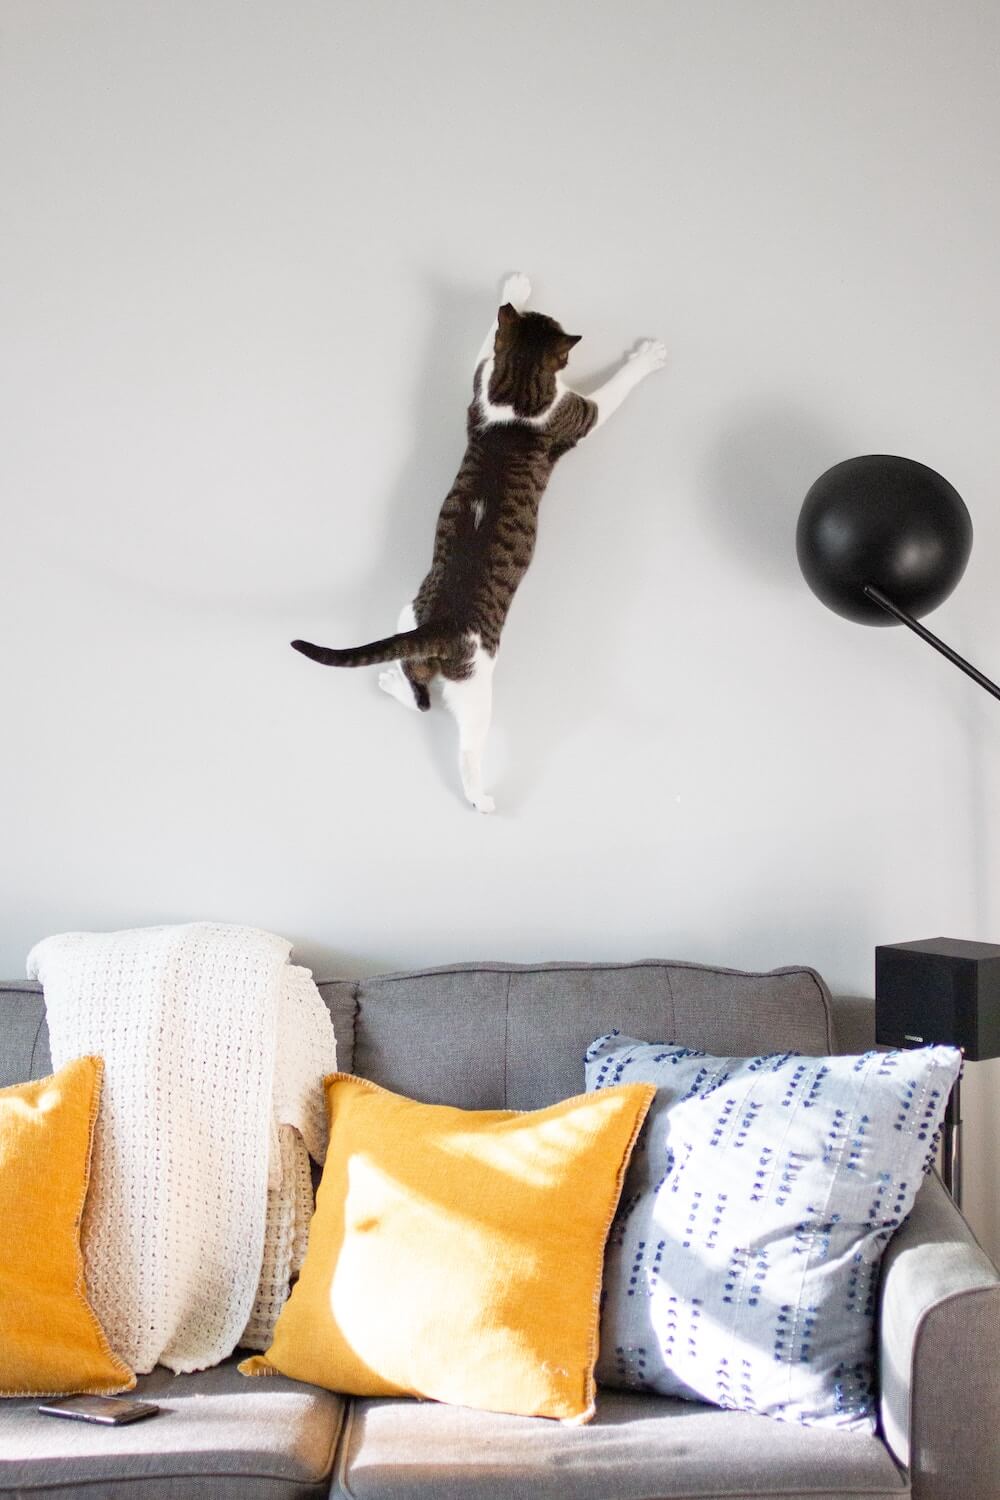 高く垂直跳びのジャンプをする猫のイメージ写真